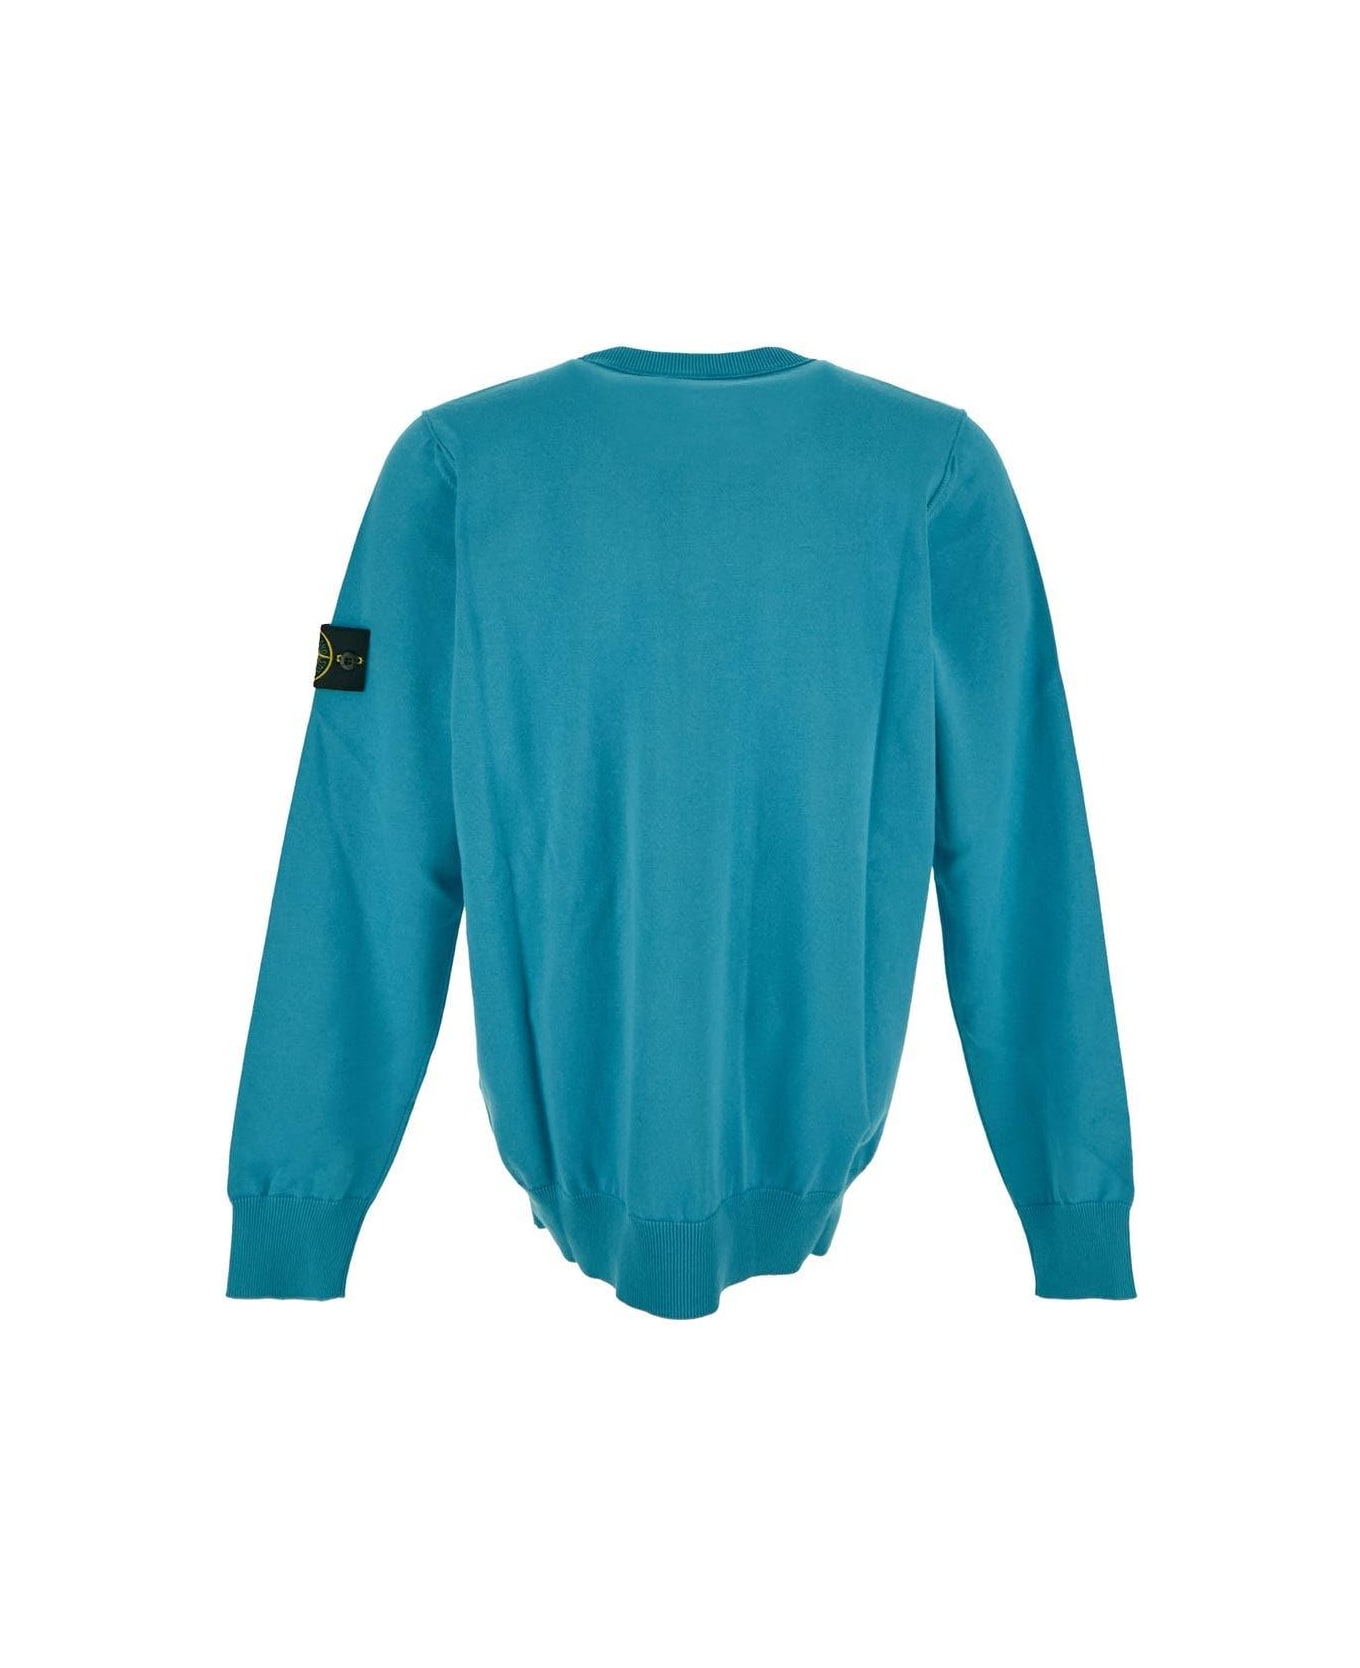 Stone Island Turquoise Sweater - V0042